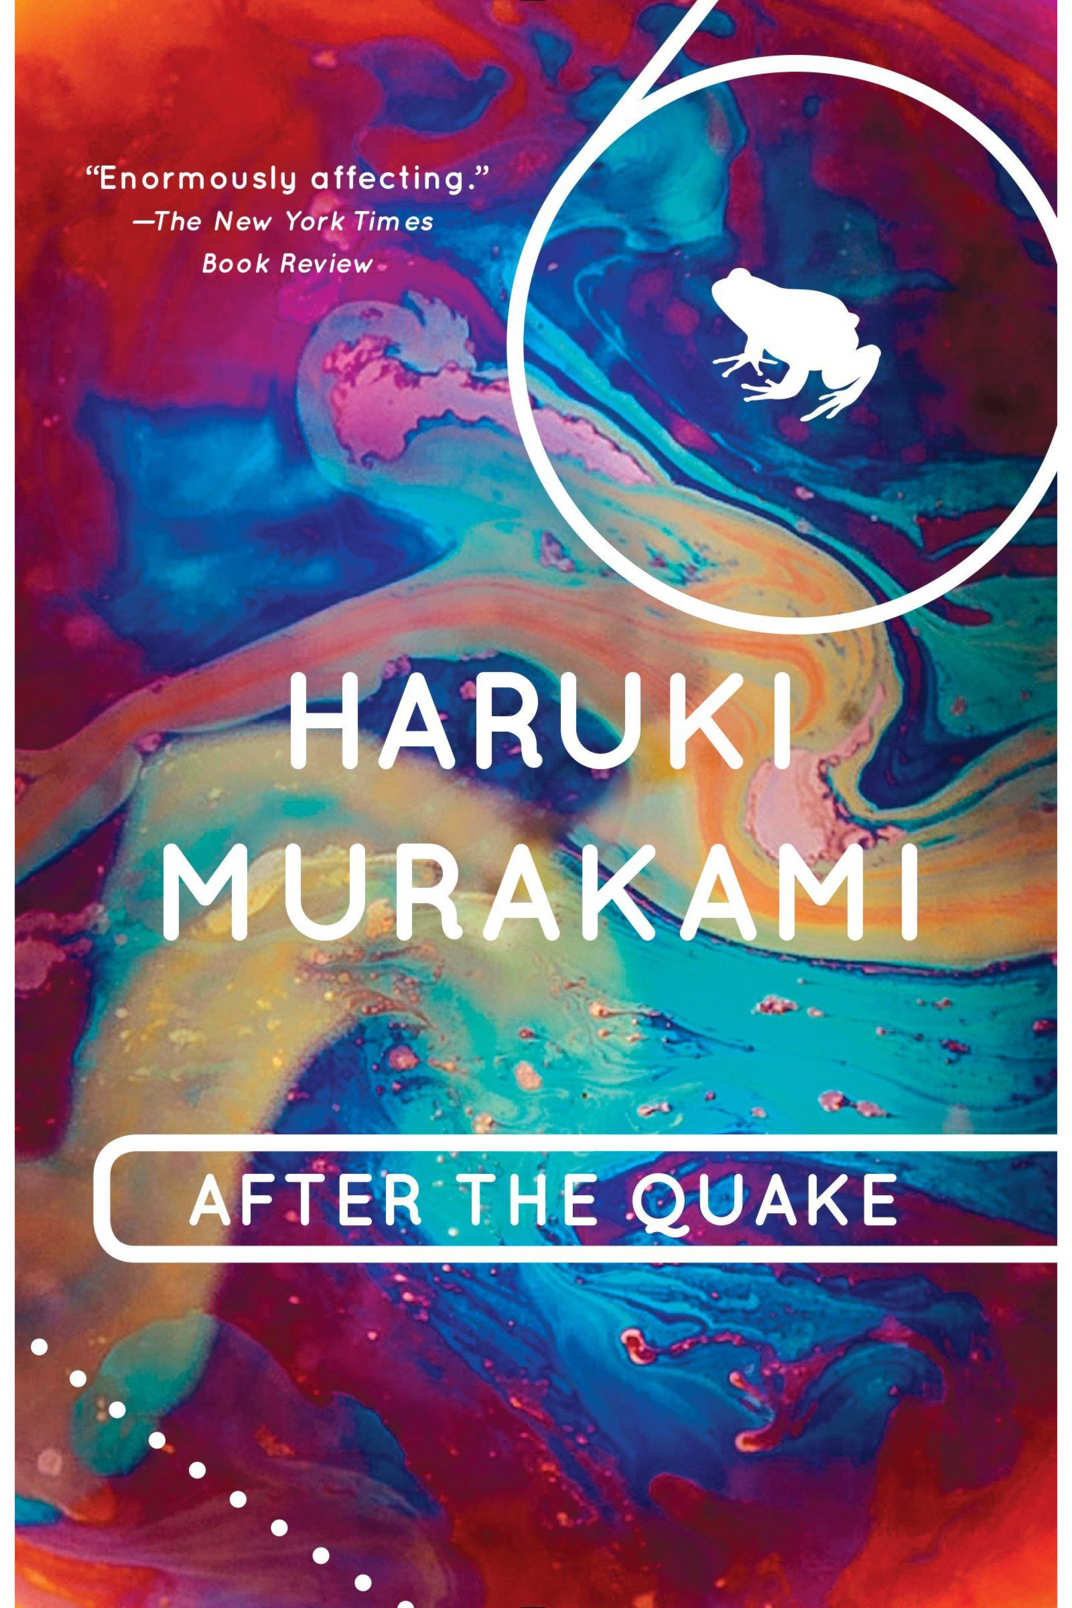 22 Best Haruki Murakami Books, Ranked